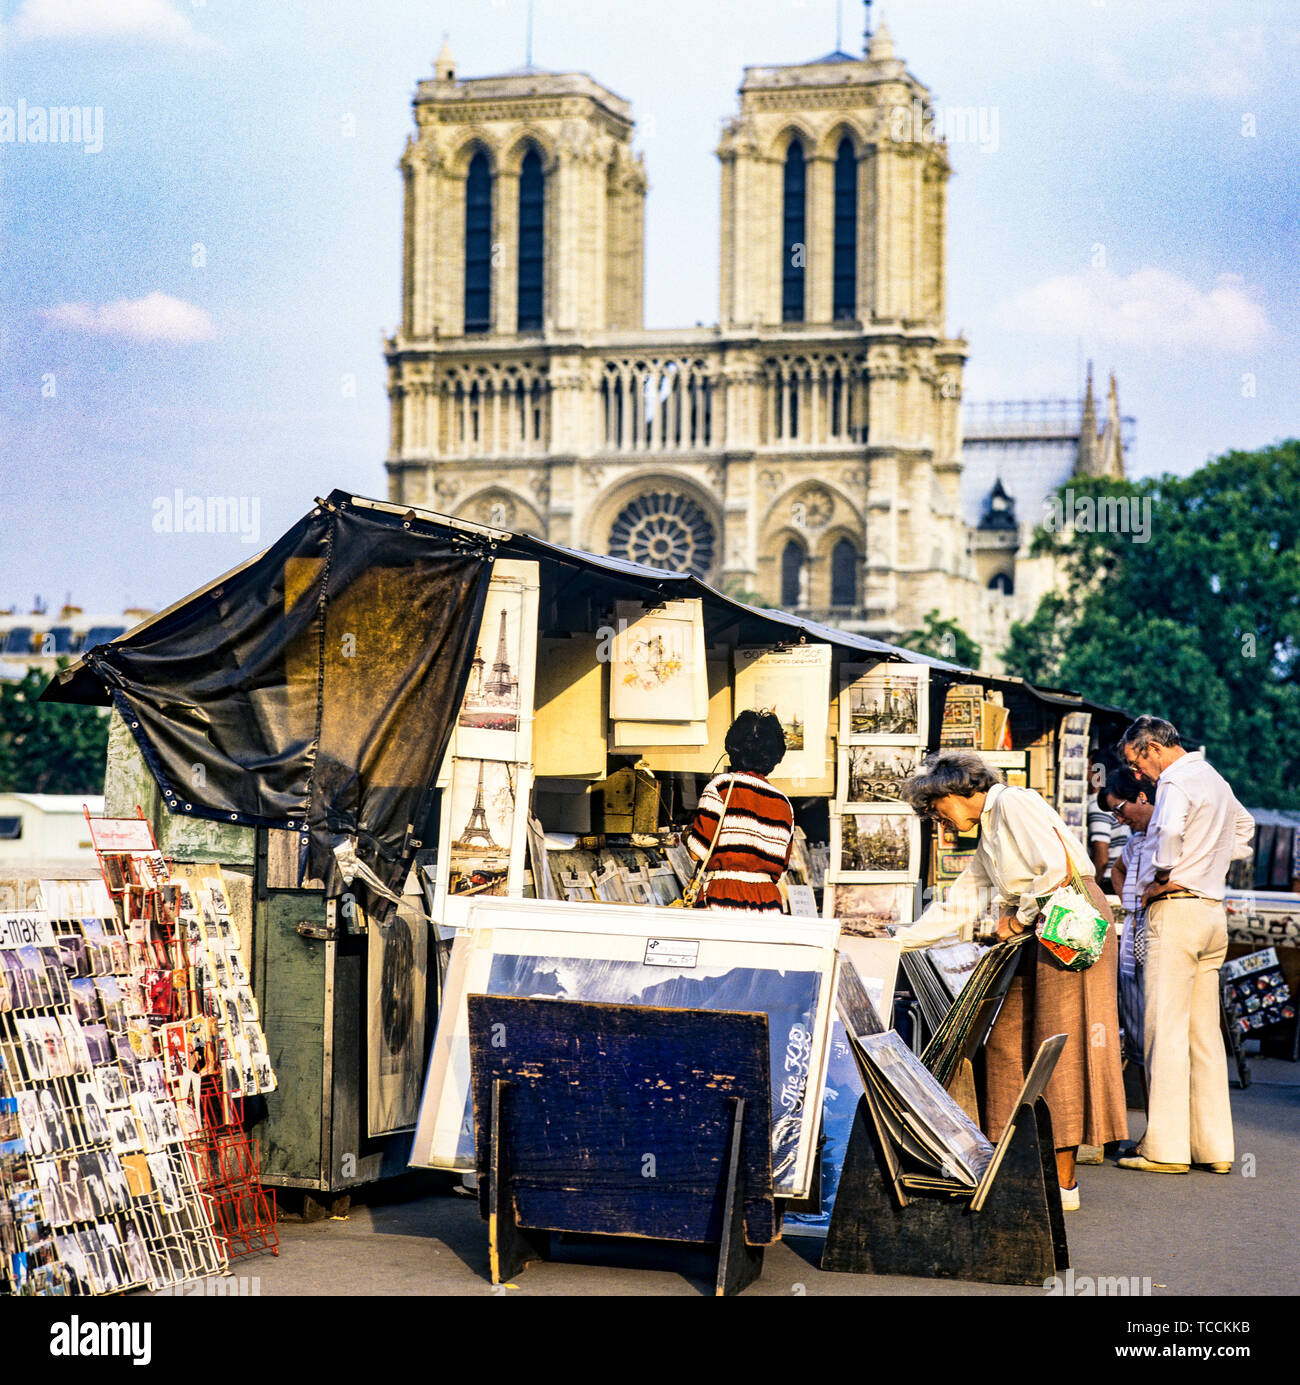 People shopping, secondhand booksellers, bouquinistes, quai de Montebello quay, Notre-Dame de Paris cathedral, Paris, France, Europe, Stock Photo